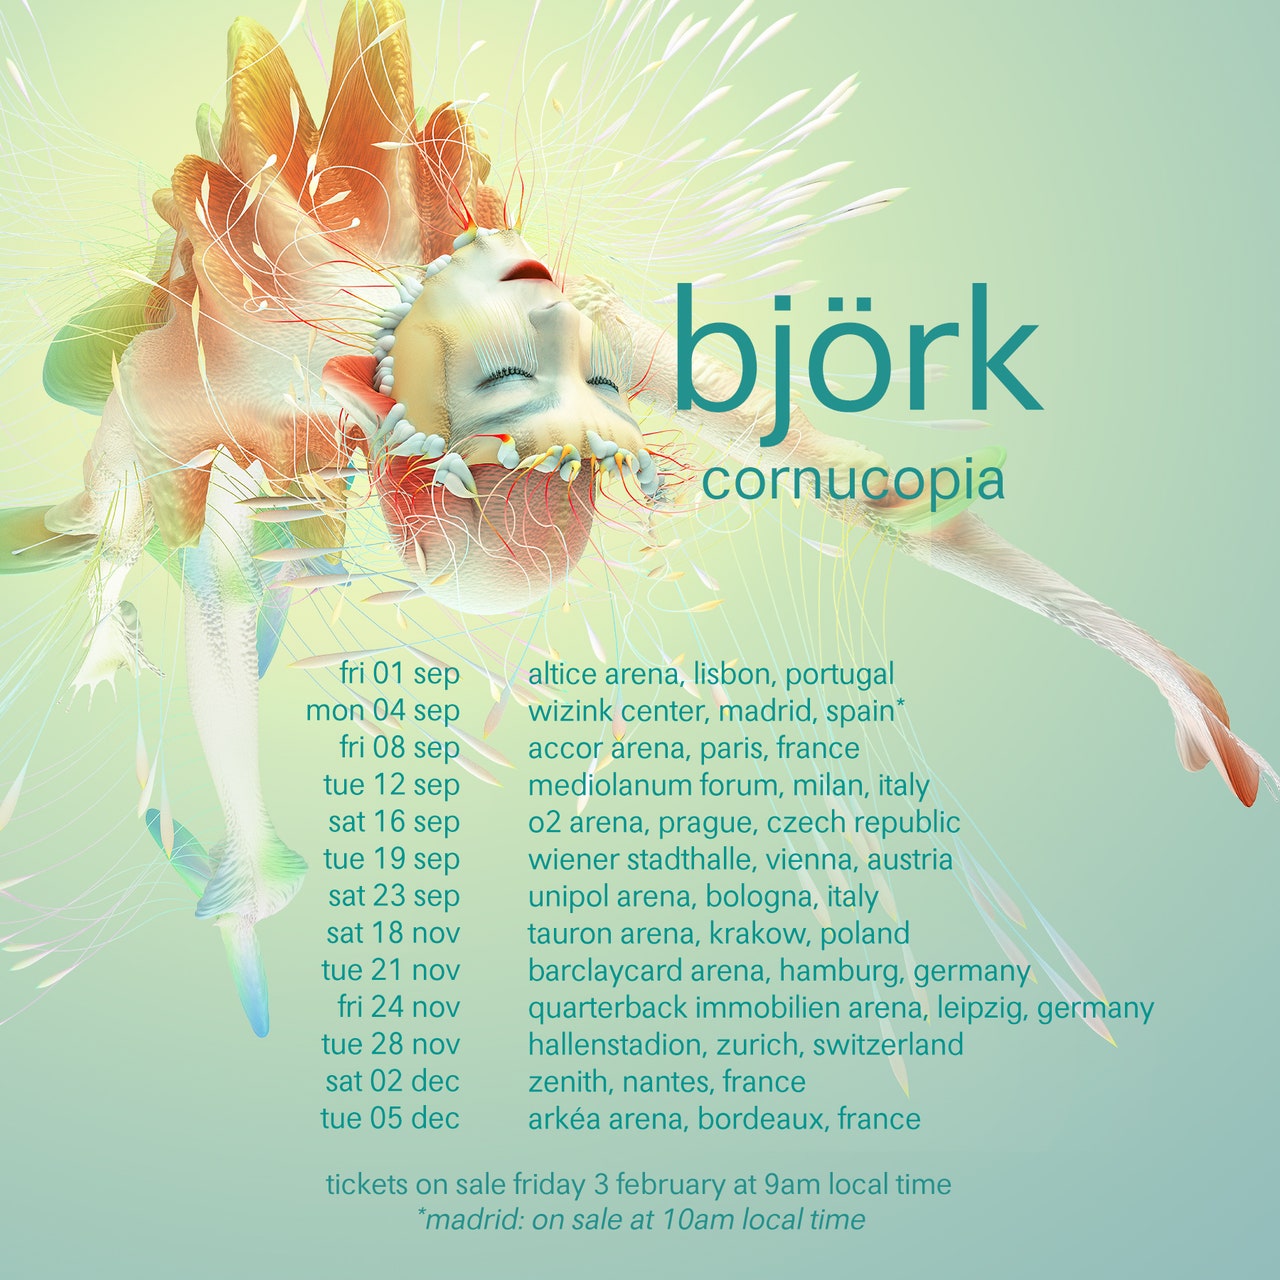 Corne d'abondance de Björk